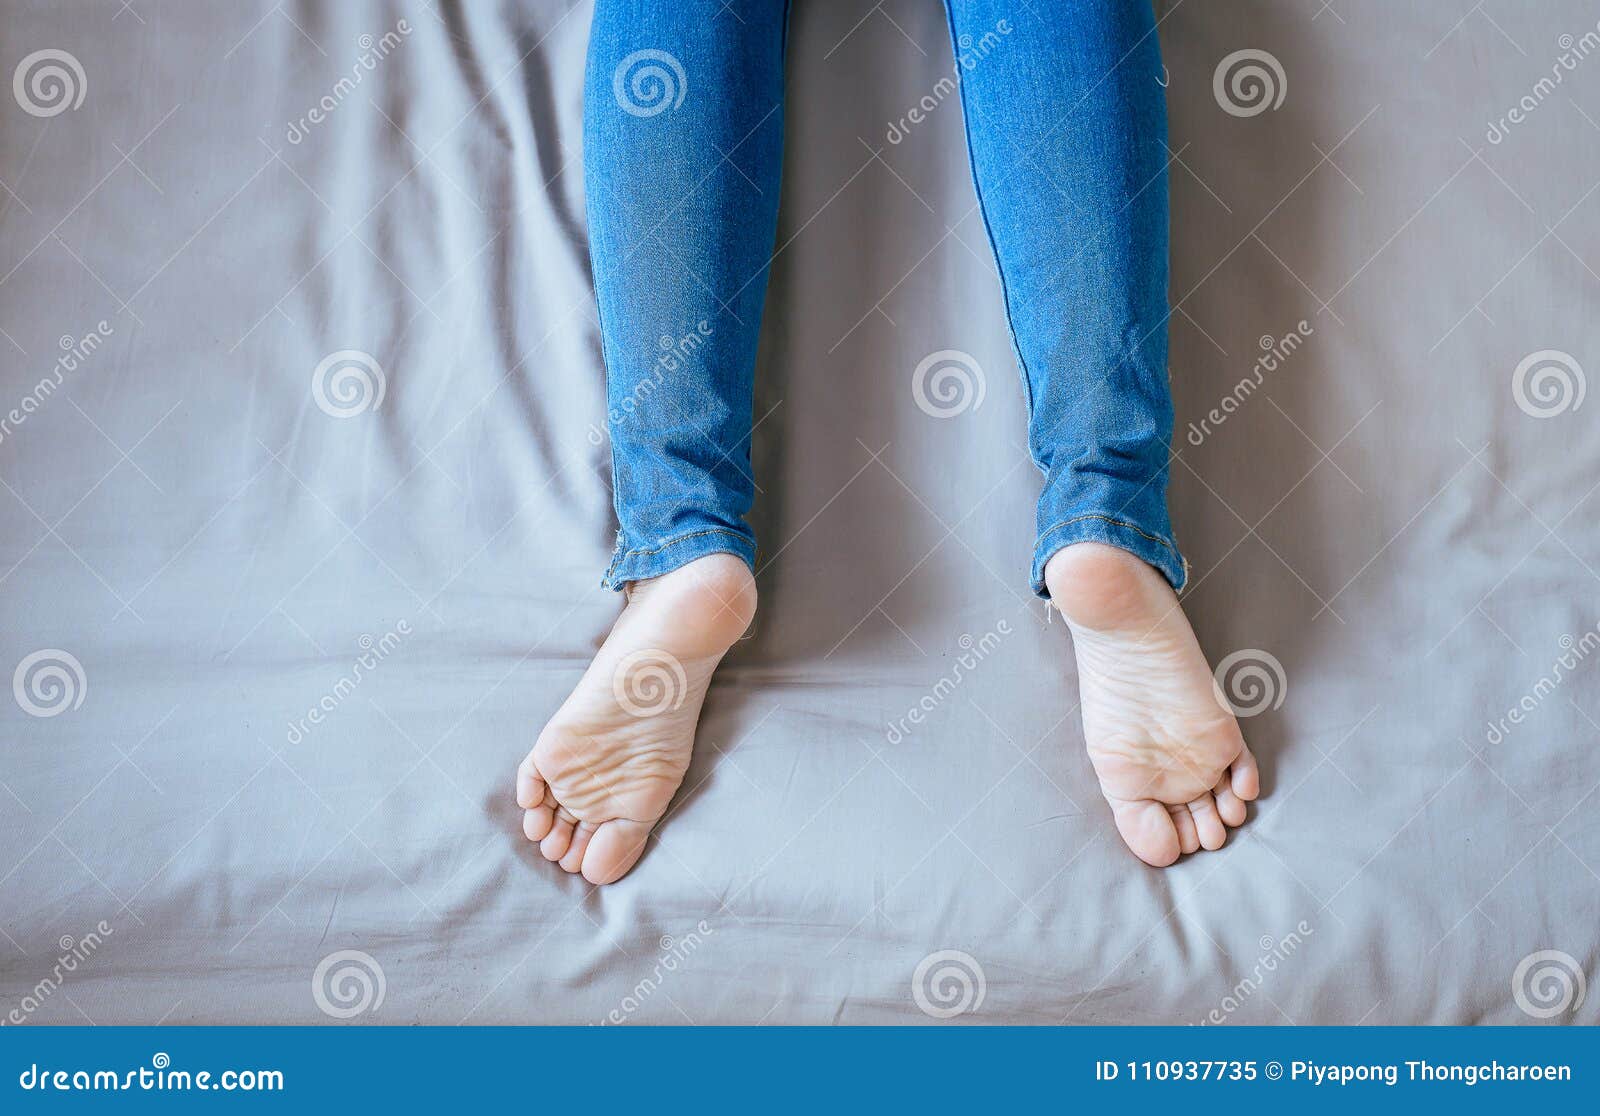 Feet in jeans